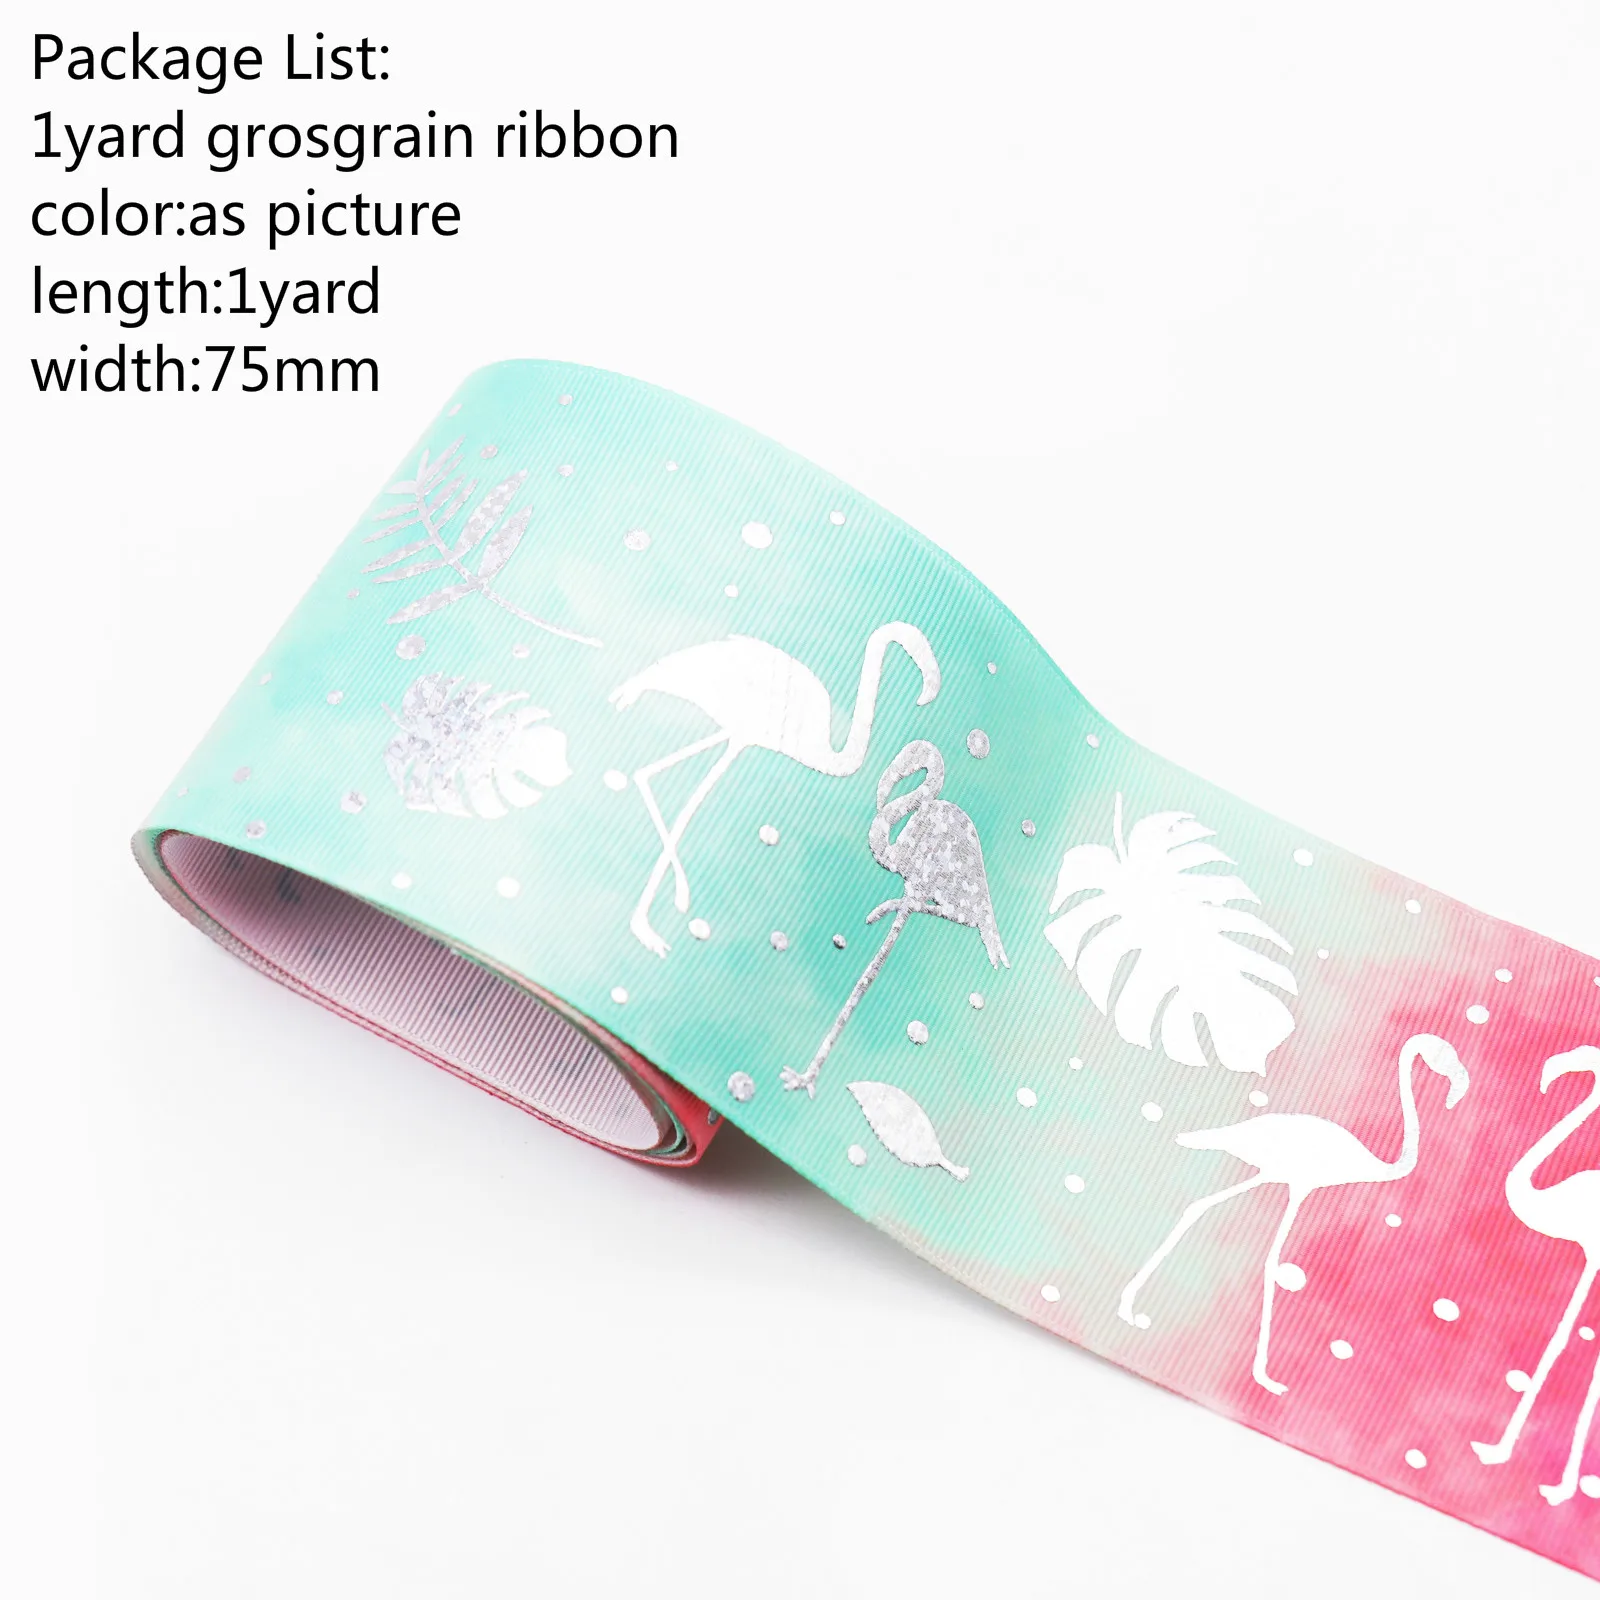 1 ярд 25 мм 75 мм единорог; Фламинго Grosgrain лента для DIY аксессуары для волос цветок подарочная упаковка Рождественский Свадебный декор - Цвет: Антикварная бронза